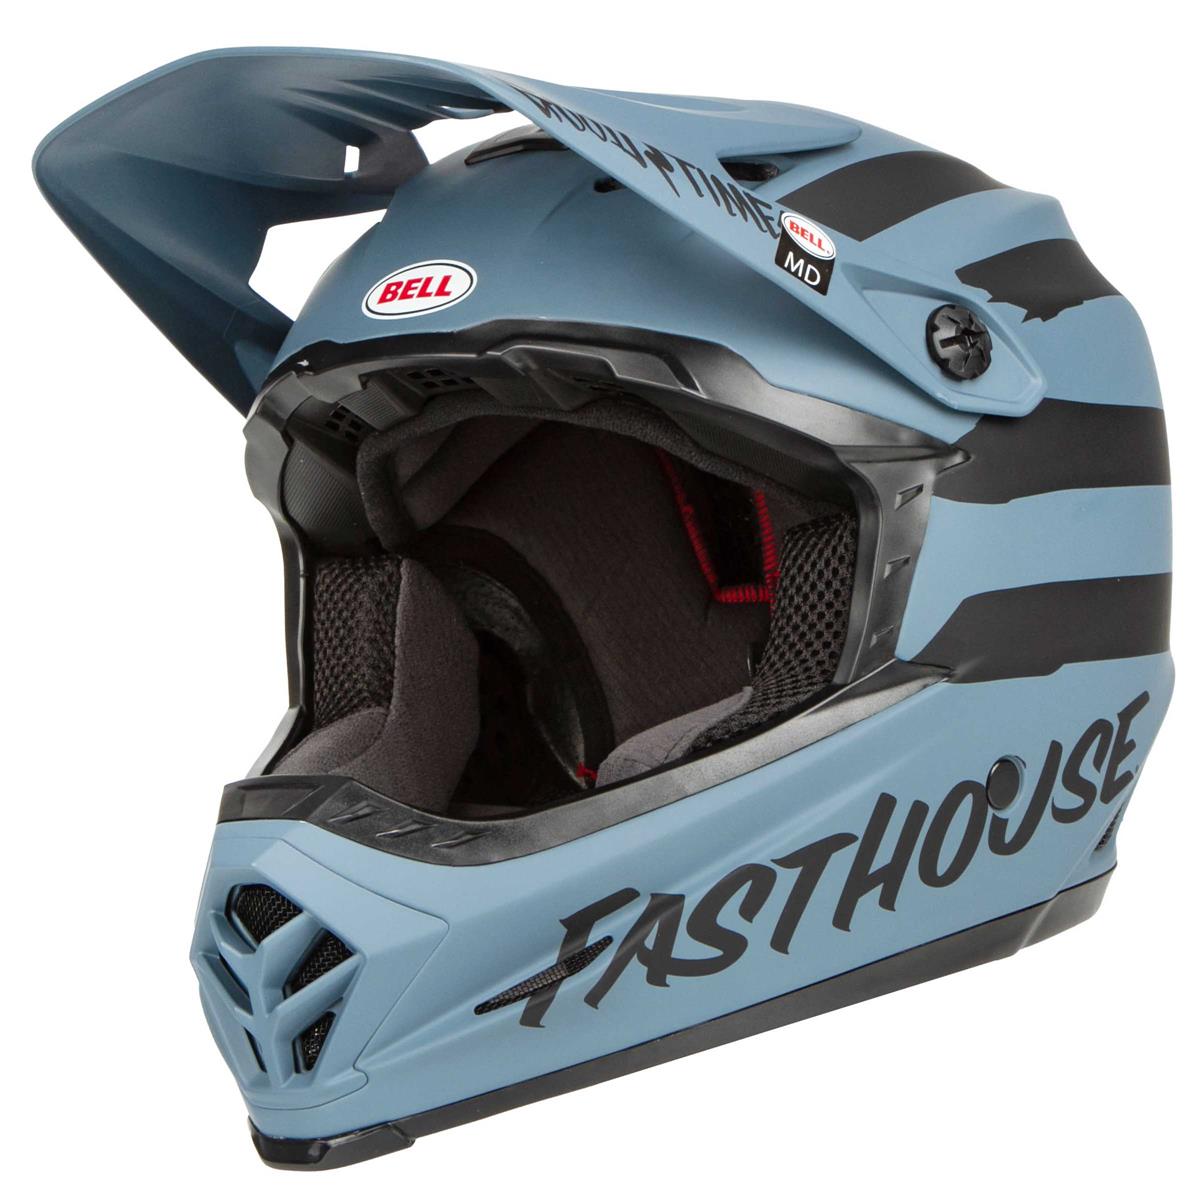 FastHouse Helmet Tee XL Red MX BMX MTB 